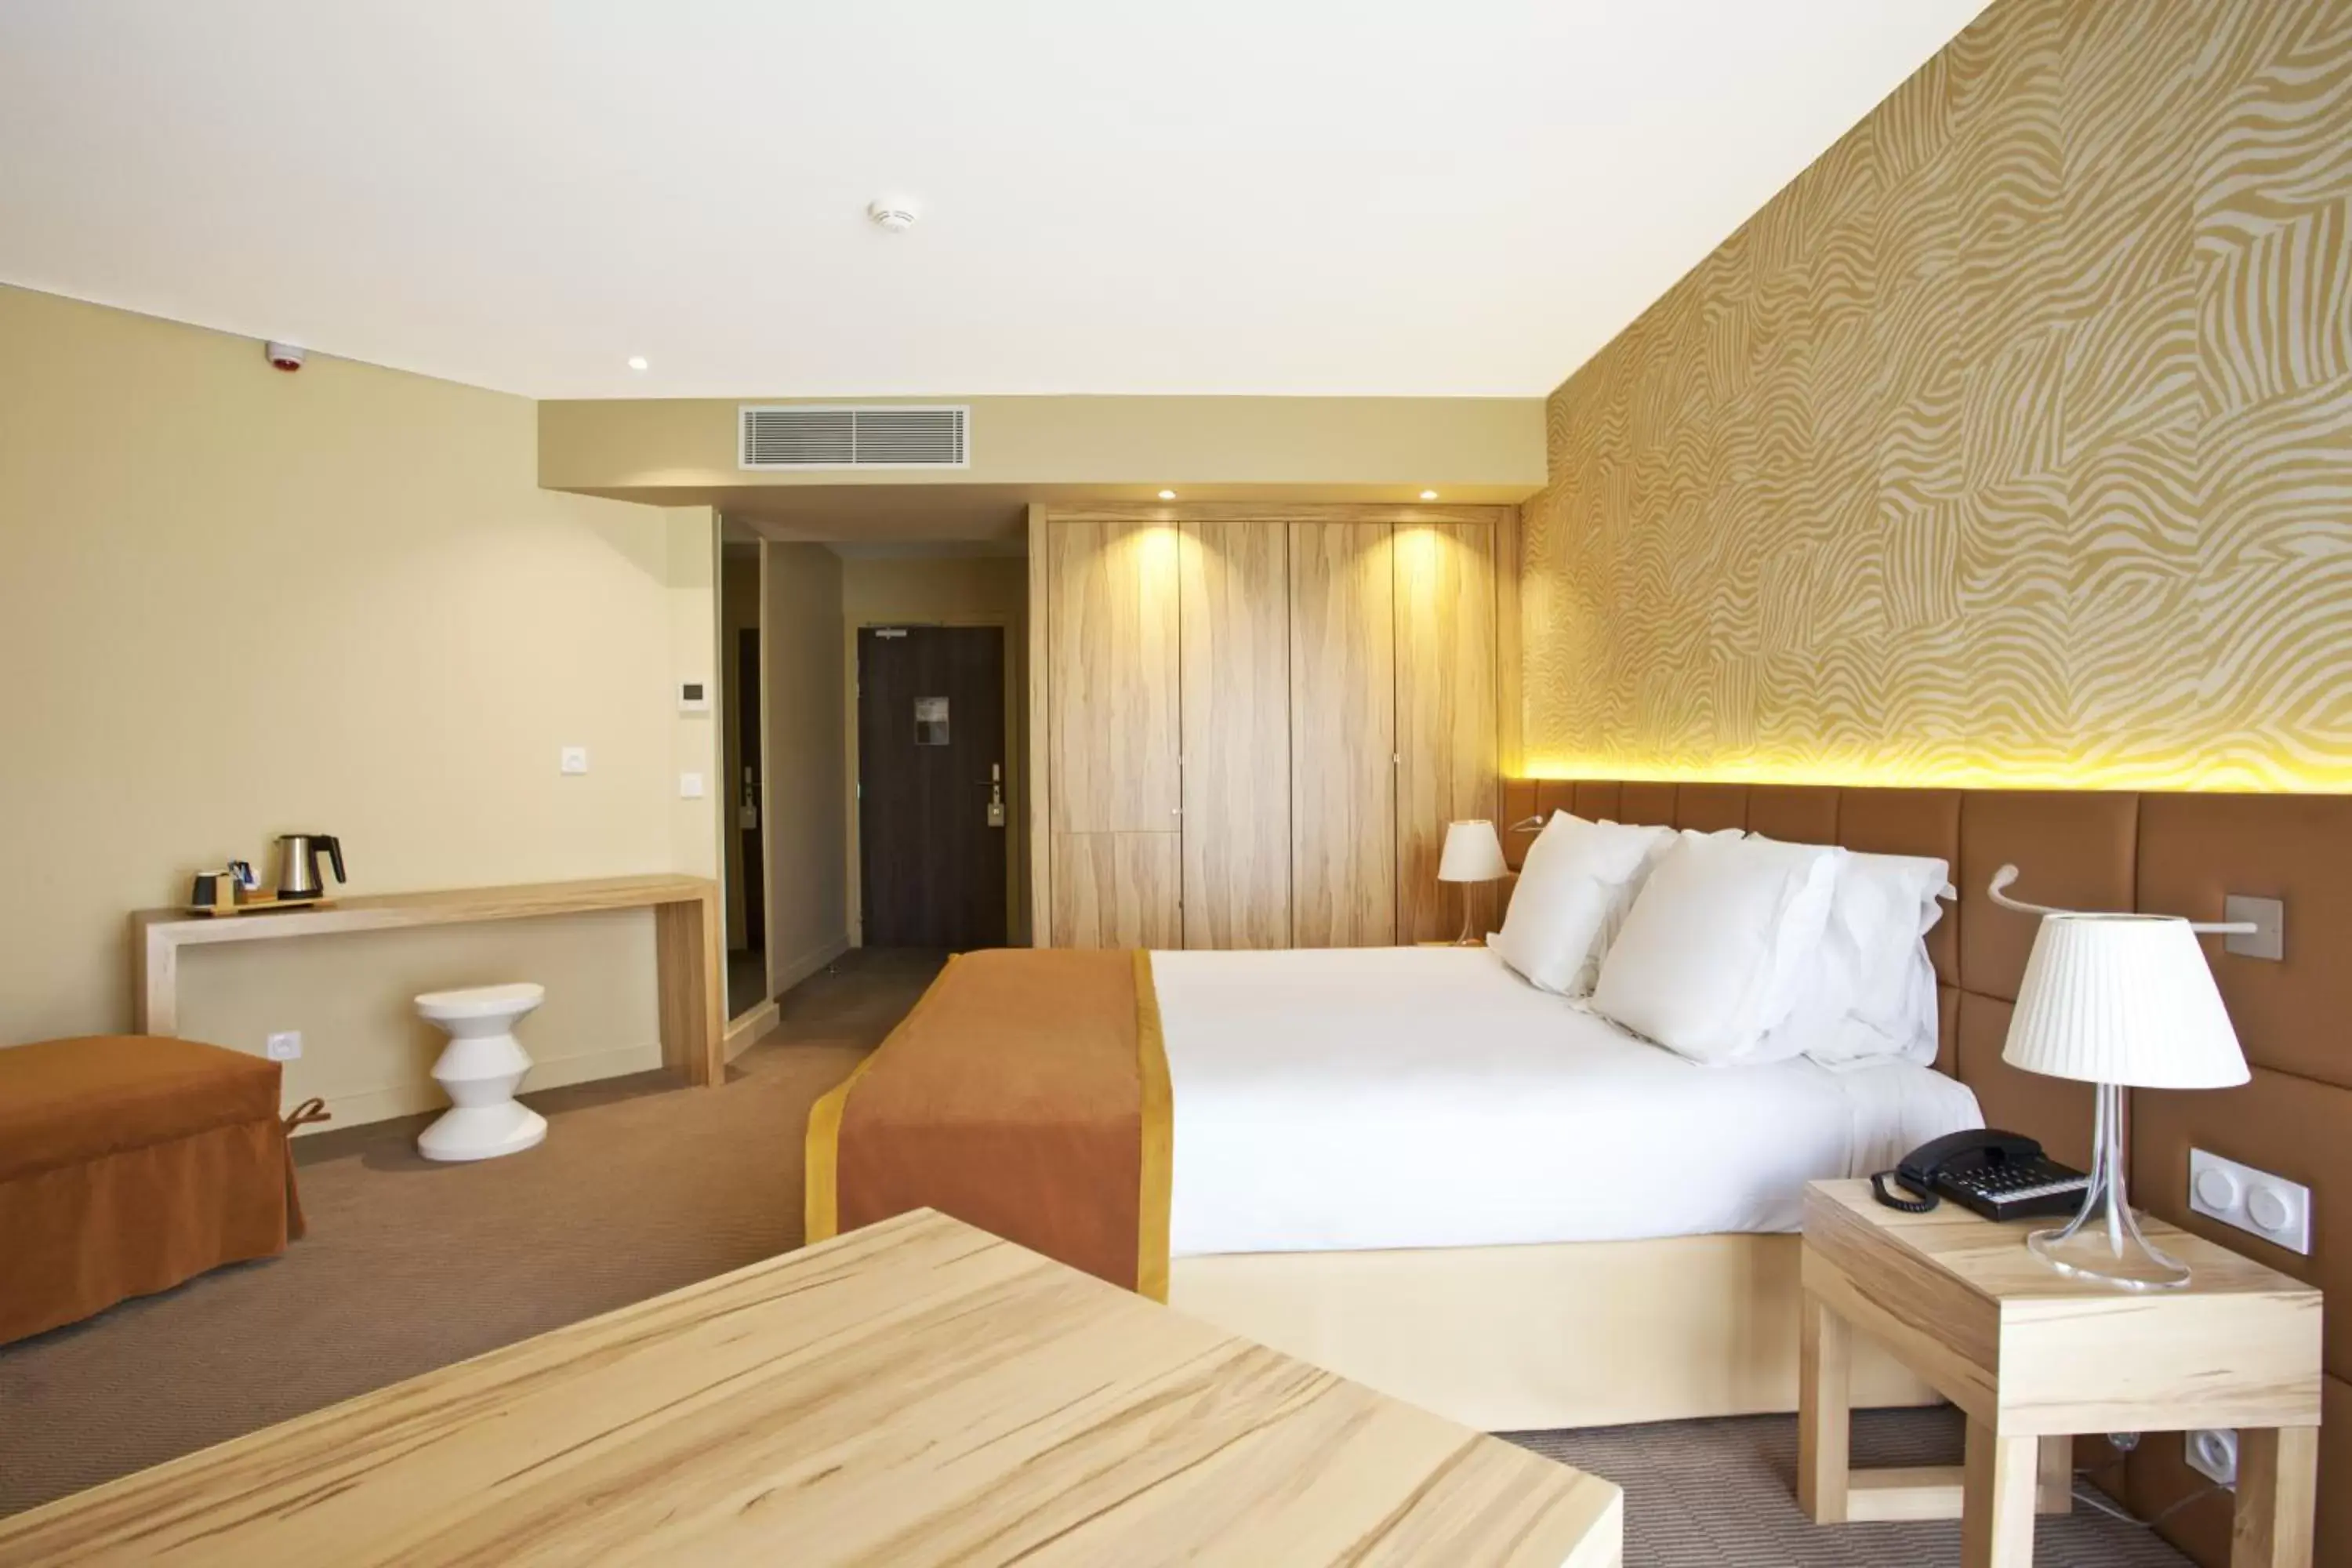 Bedroom, Bed in Best Western Hôtel Le Paradou Avignon Sud.